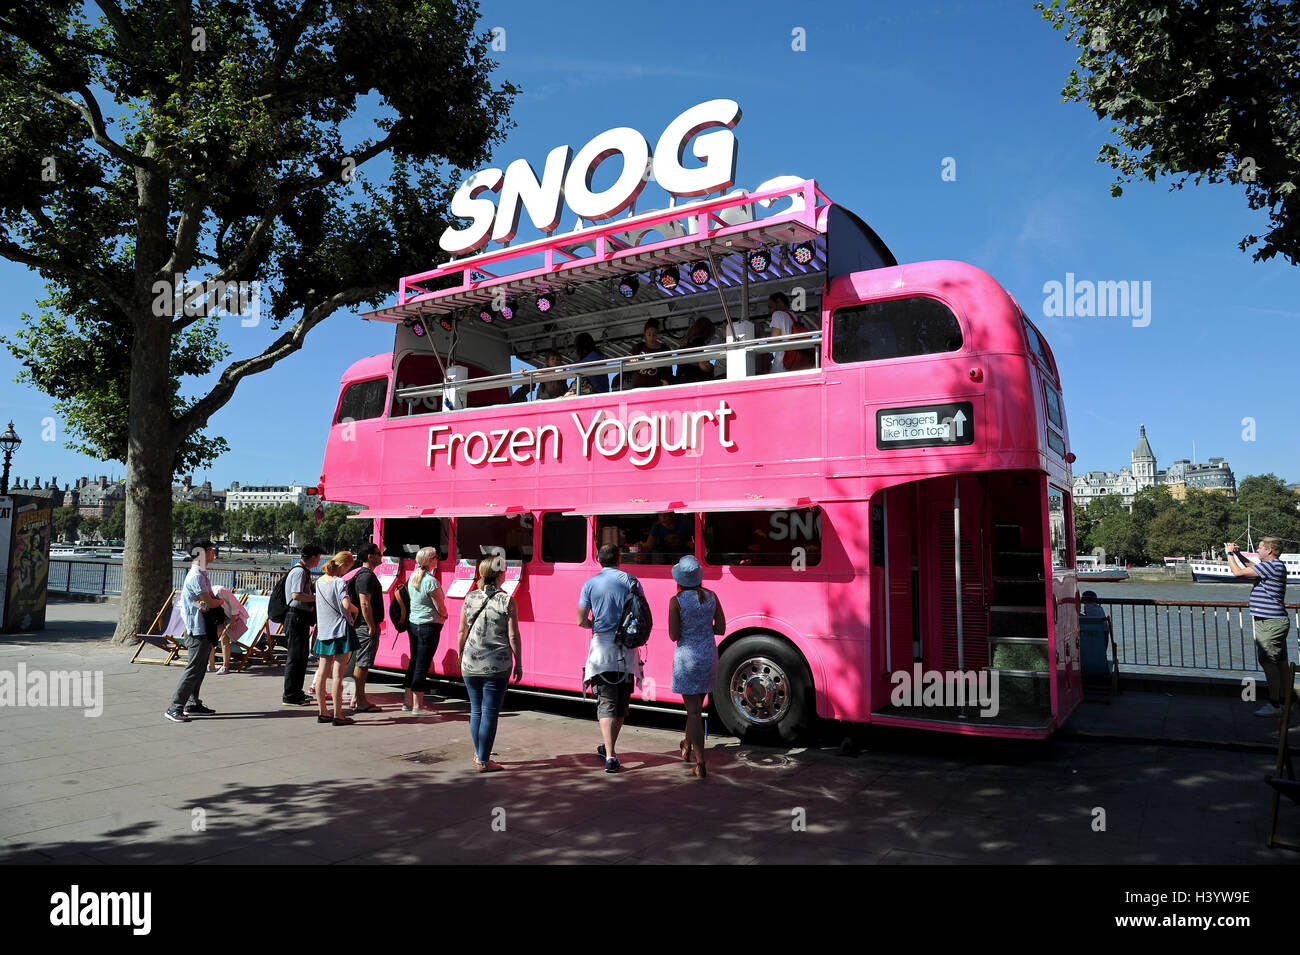 Frozen Yogurt stall bus, Southbank, London, UK Stock Photo